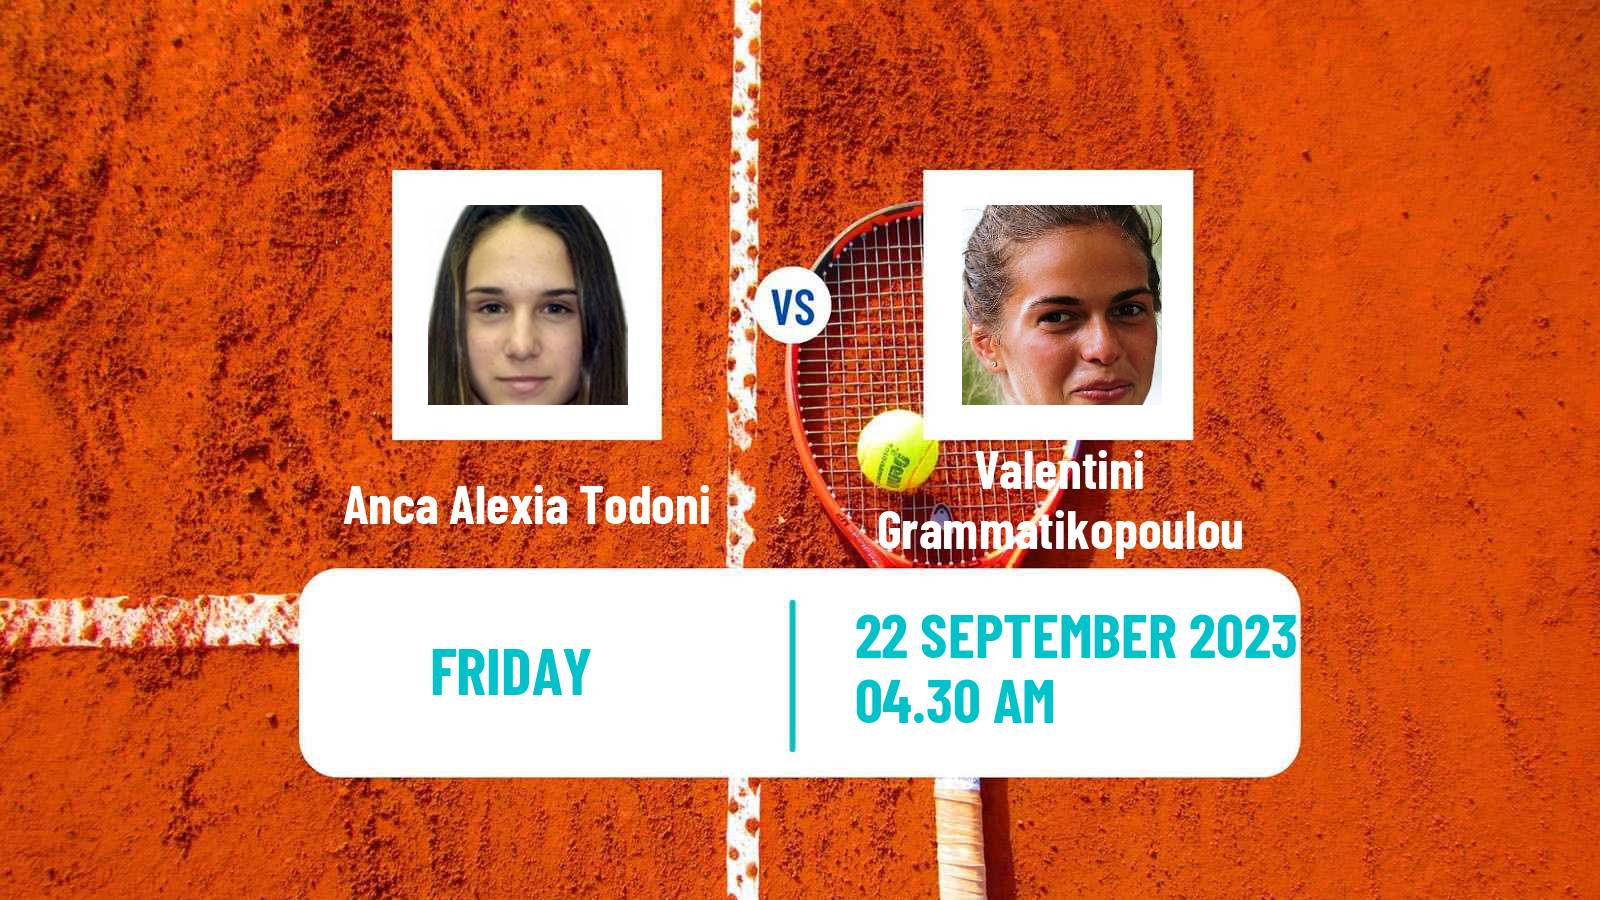 Tennis ITF W25 Slobozia Women Anca Alexia Todoni - Valentini Grammatikopoulou